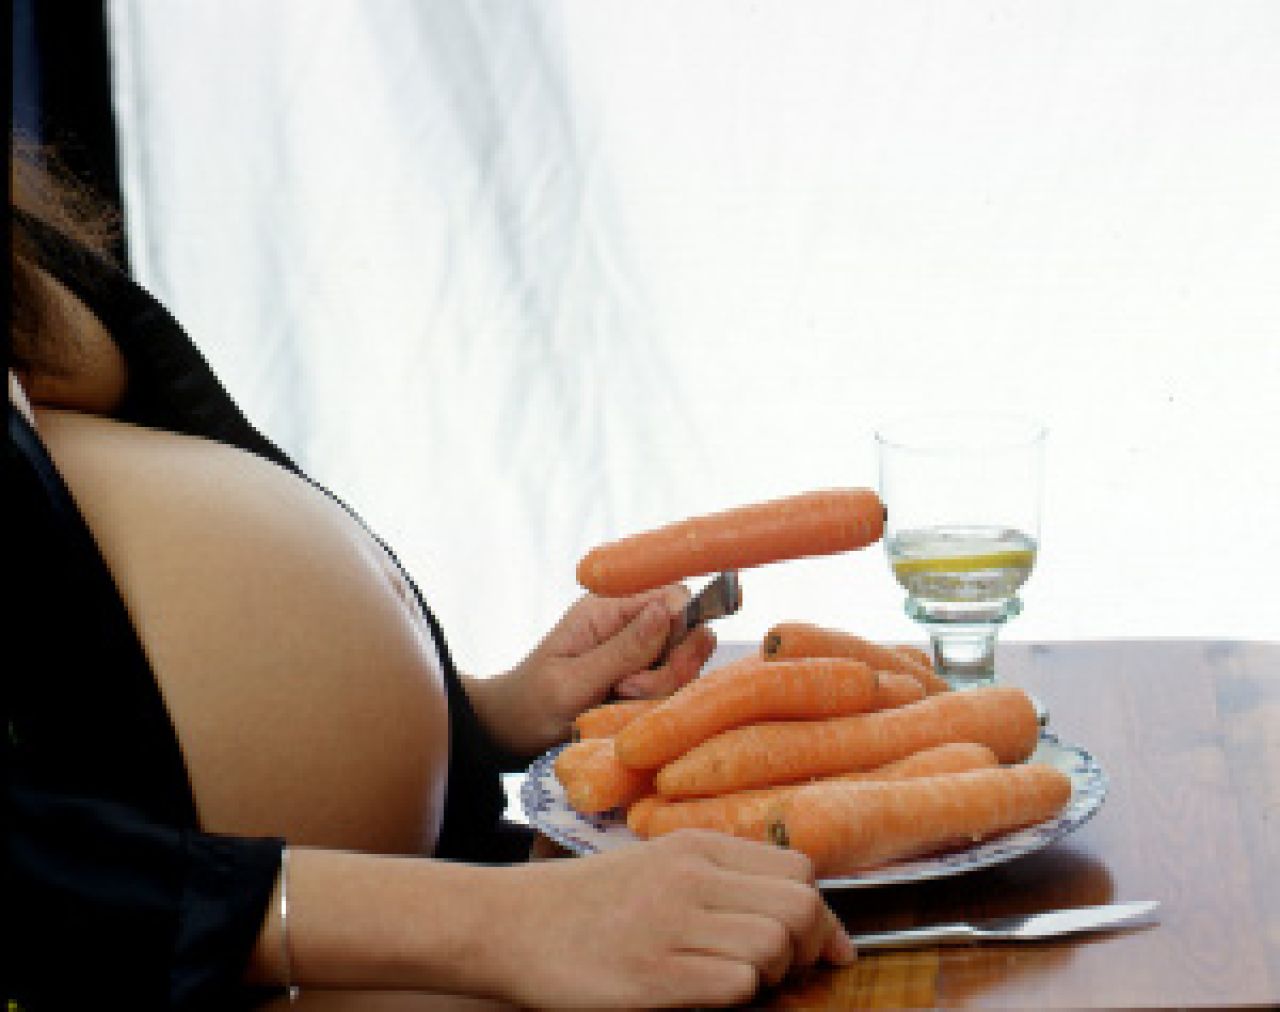 Zdrowa dieta w ciąży może zapobiegać wadom wrodzonym u dzieci